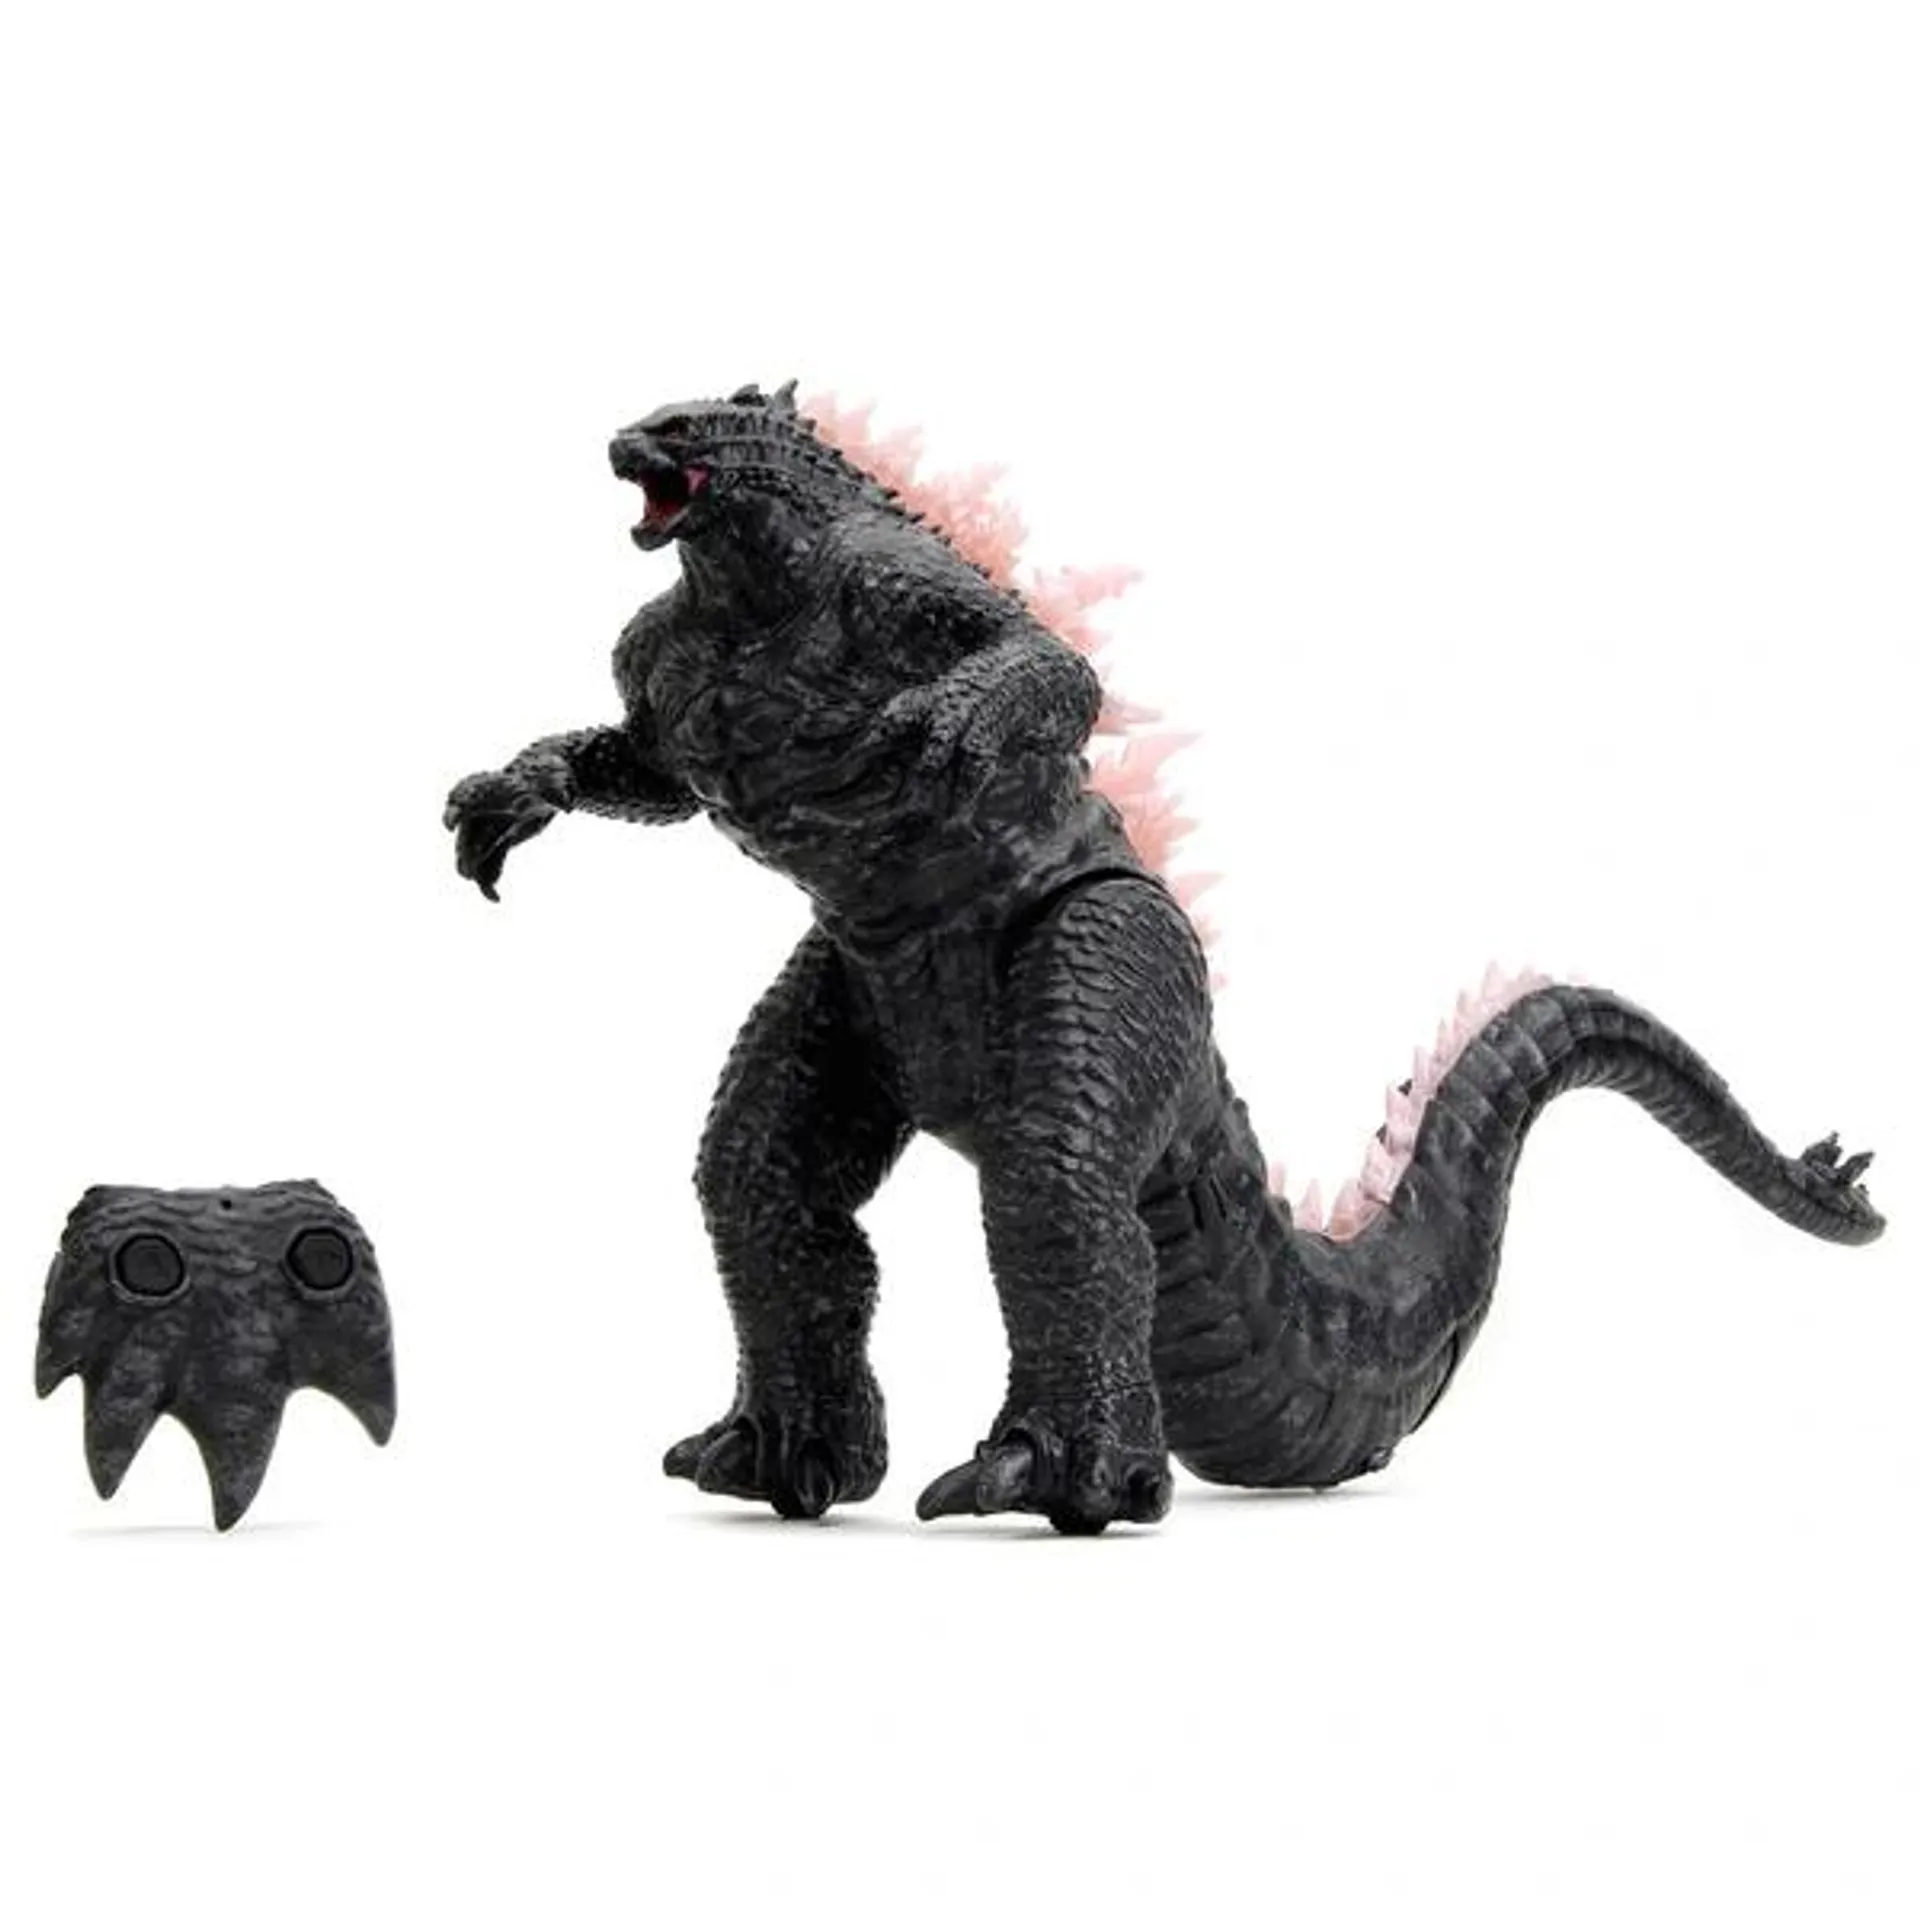 Monsterverse Godzilla x Kong: Remote Control 1:12 Heat-Ray Breath Godzilla Figure